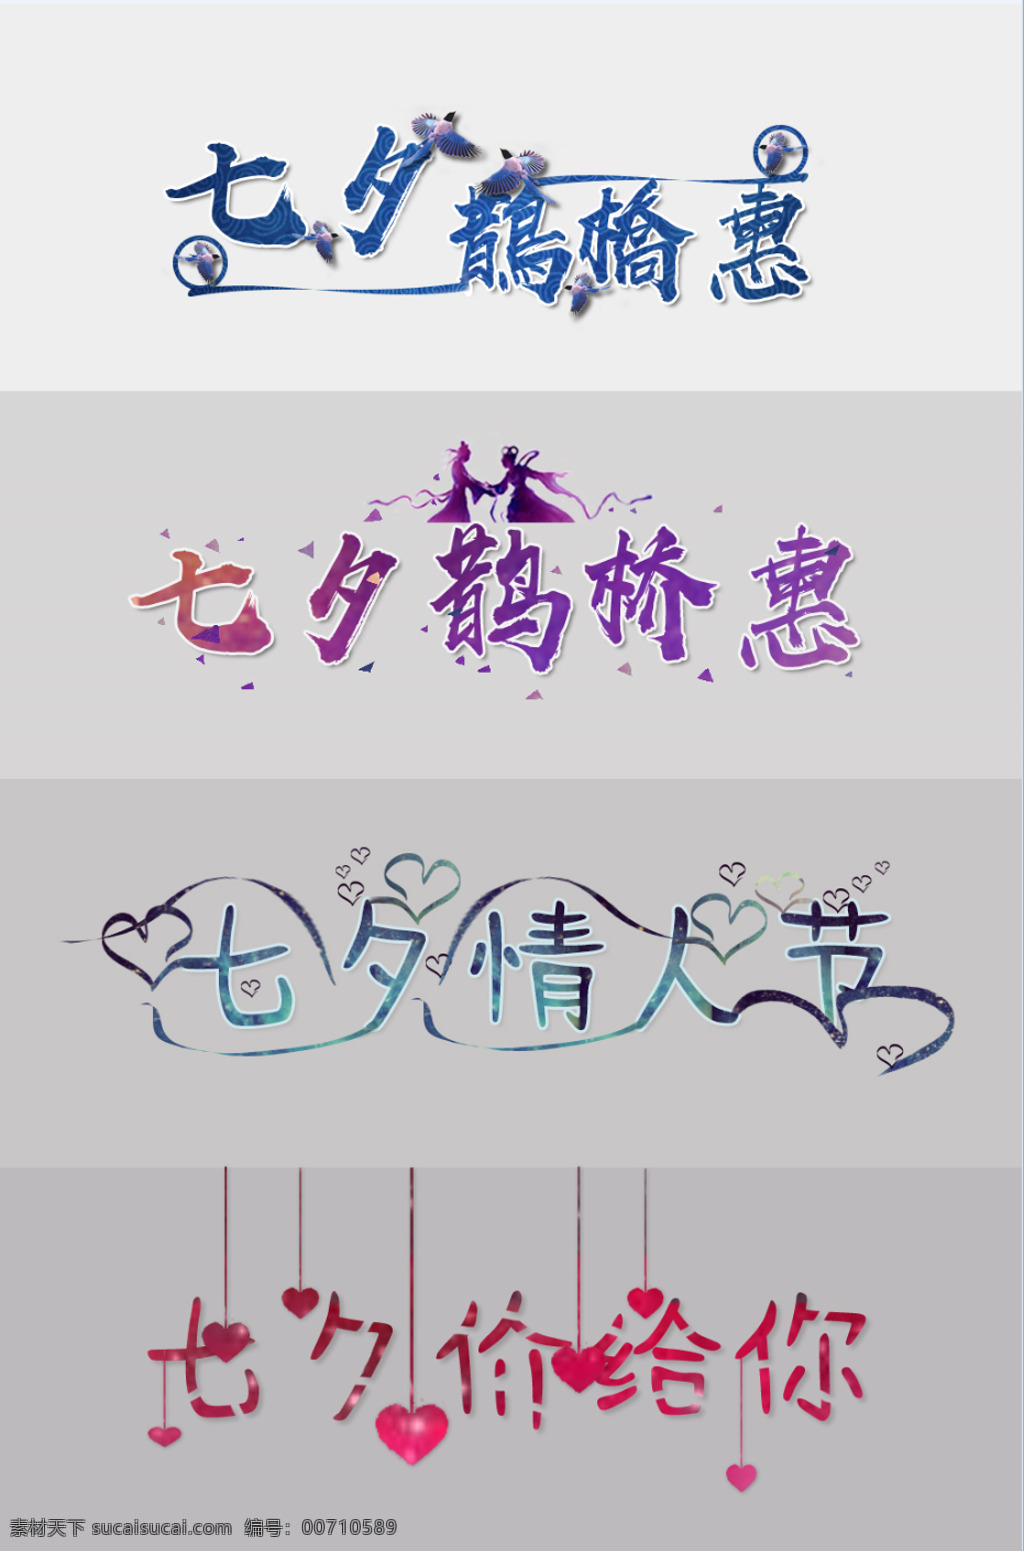 七夕 情人节 字体 图案 元素 蓝色喜鹊 紫色天空剪影 星空条纹心形 吊坠切割 节日 艺术字